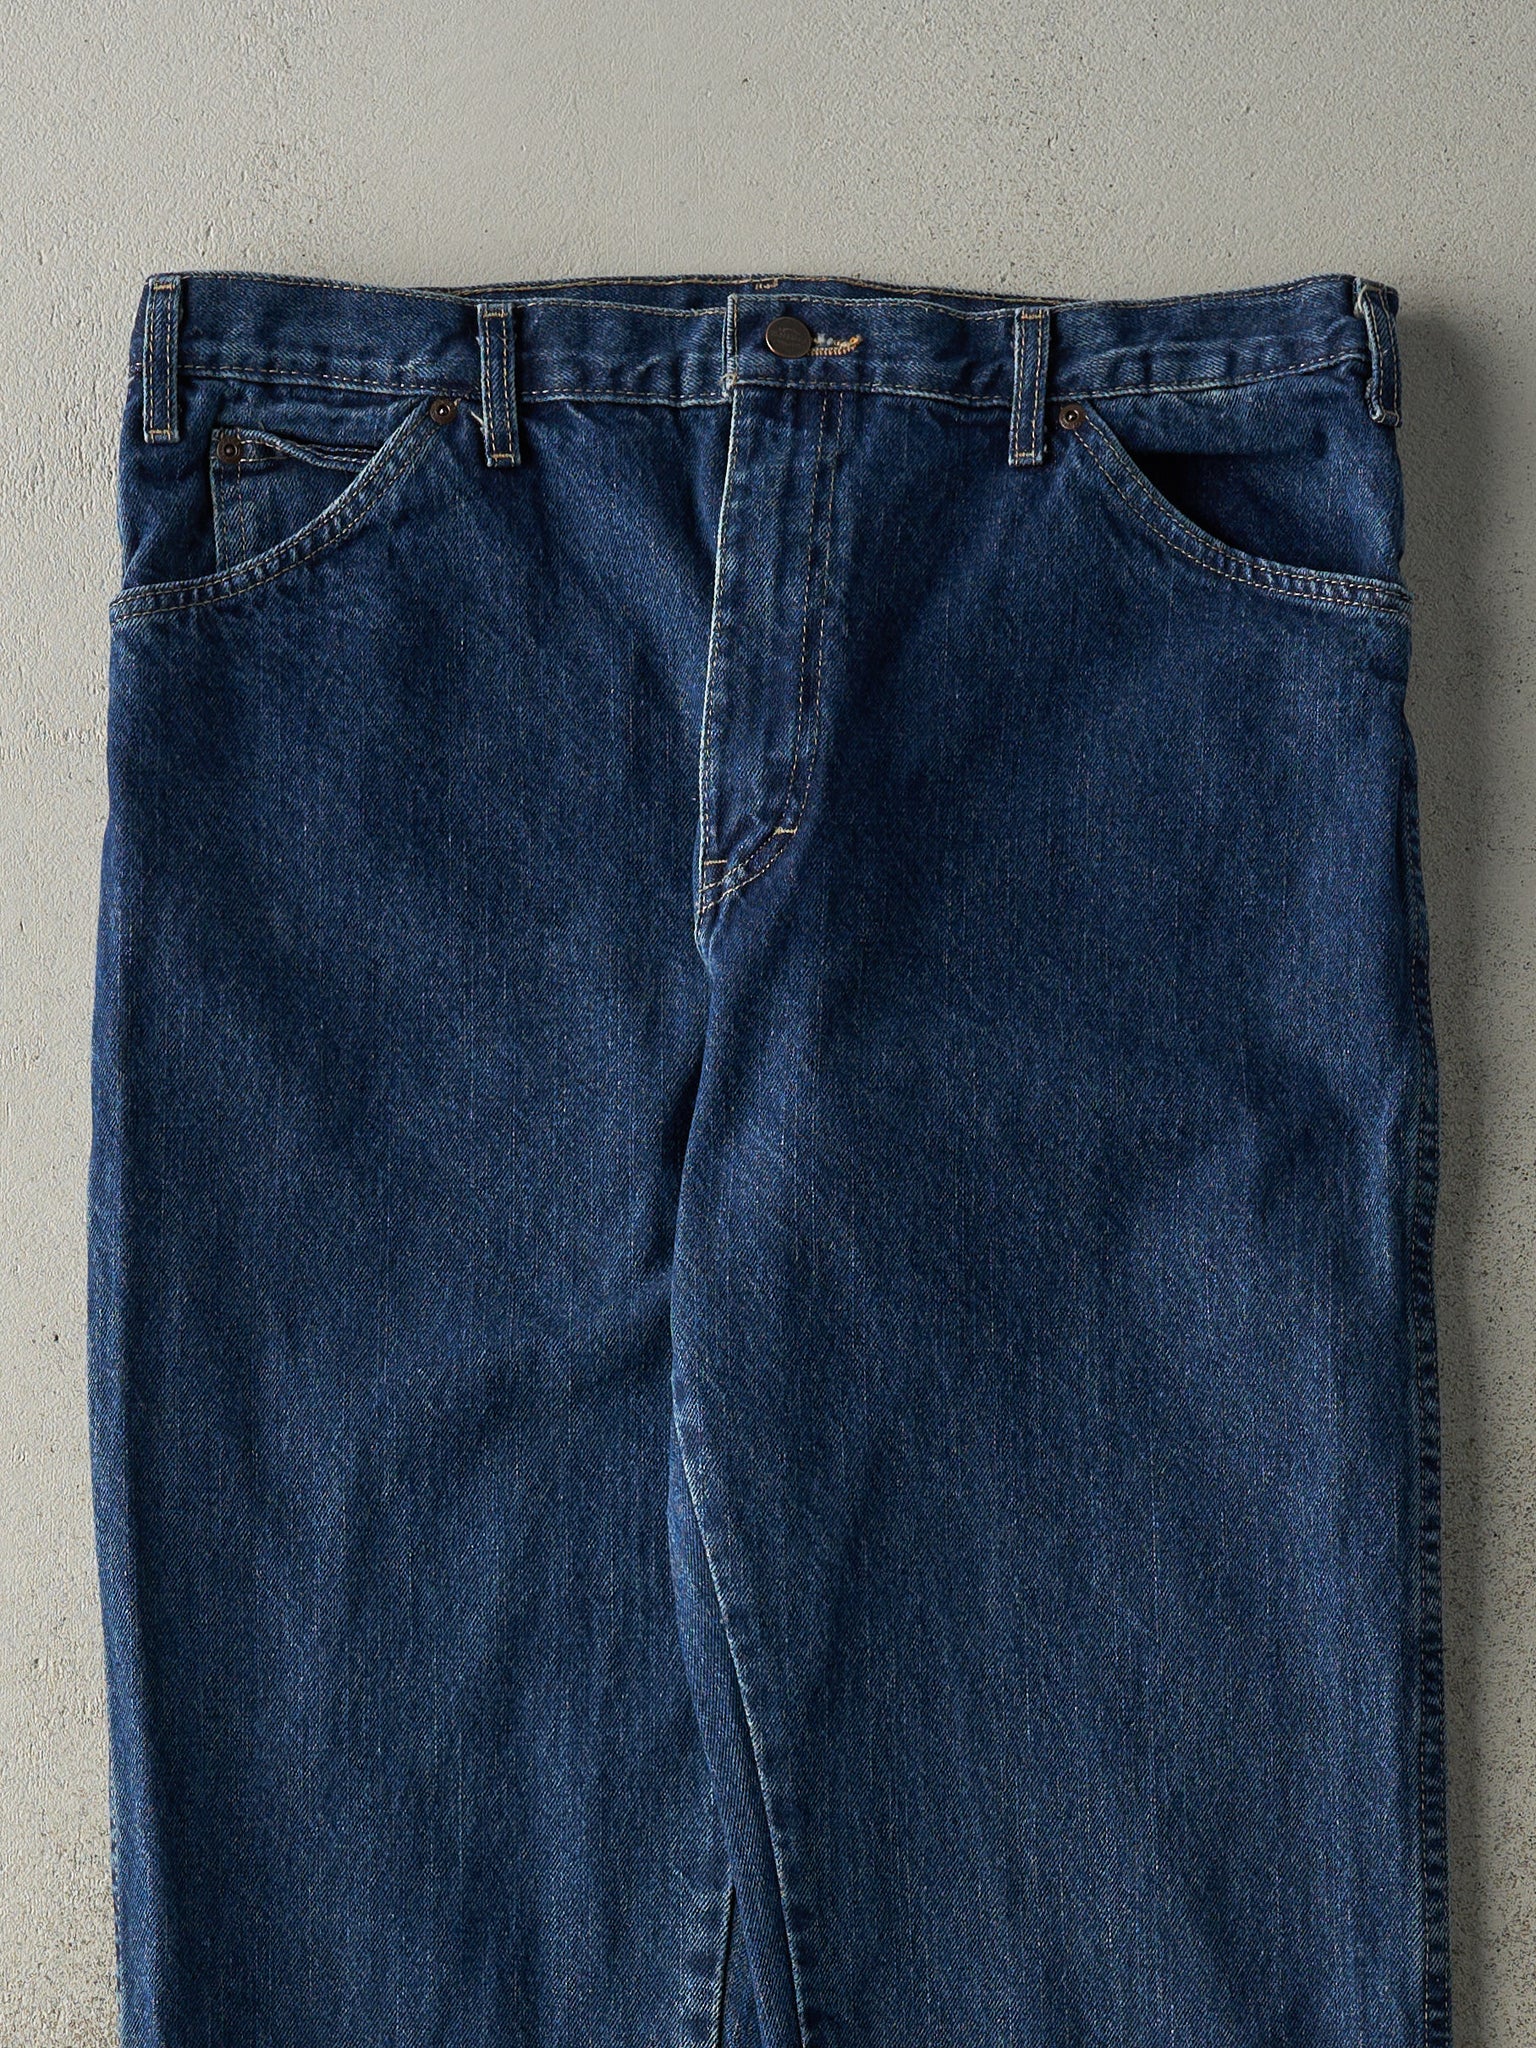 Vintage 90s Dark Wash Dickies Jeans (36x30.5)